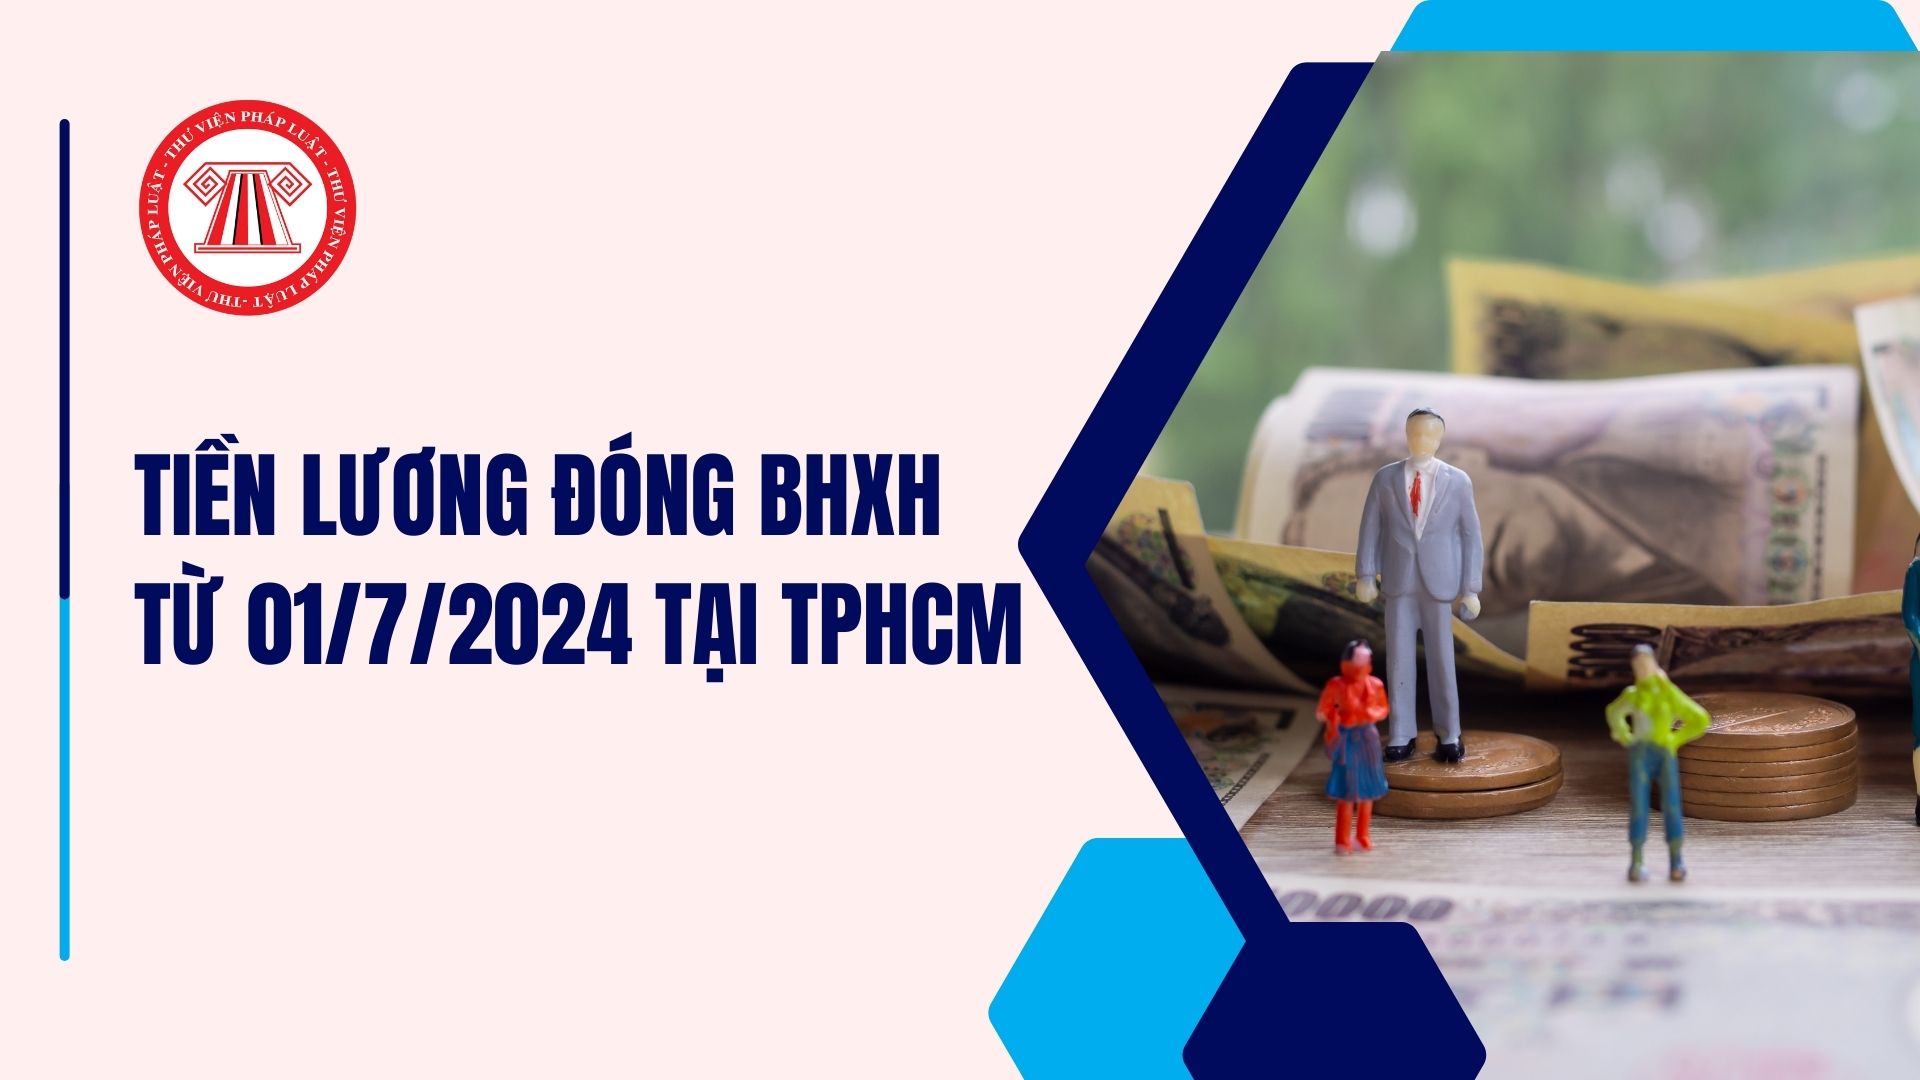 Tiền lương đóng BHXH từ 01/7/2024 tại TPHCM không thấp hơn 4,96 triệu đồng (trừ Cần Giờ)